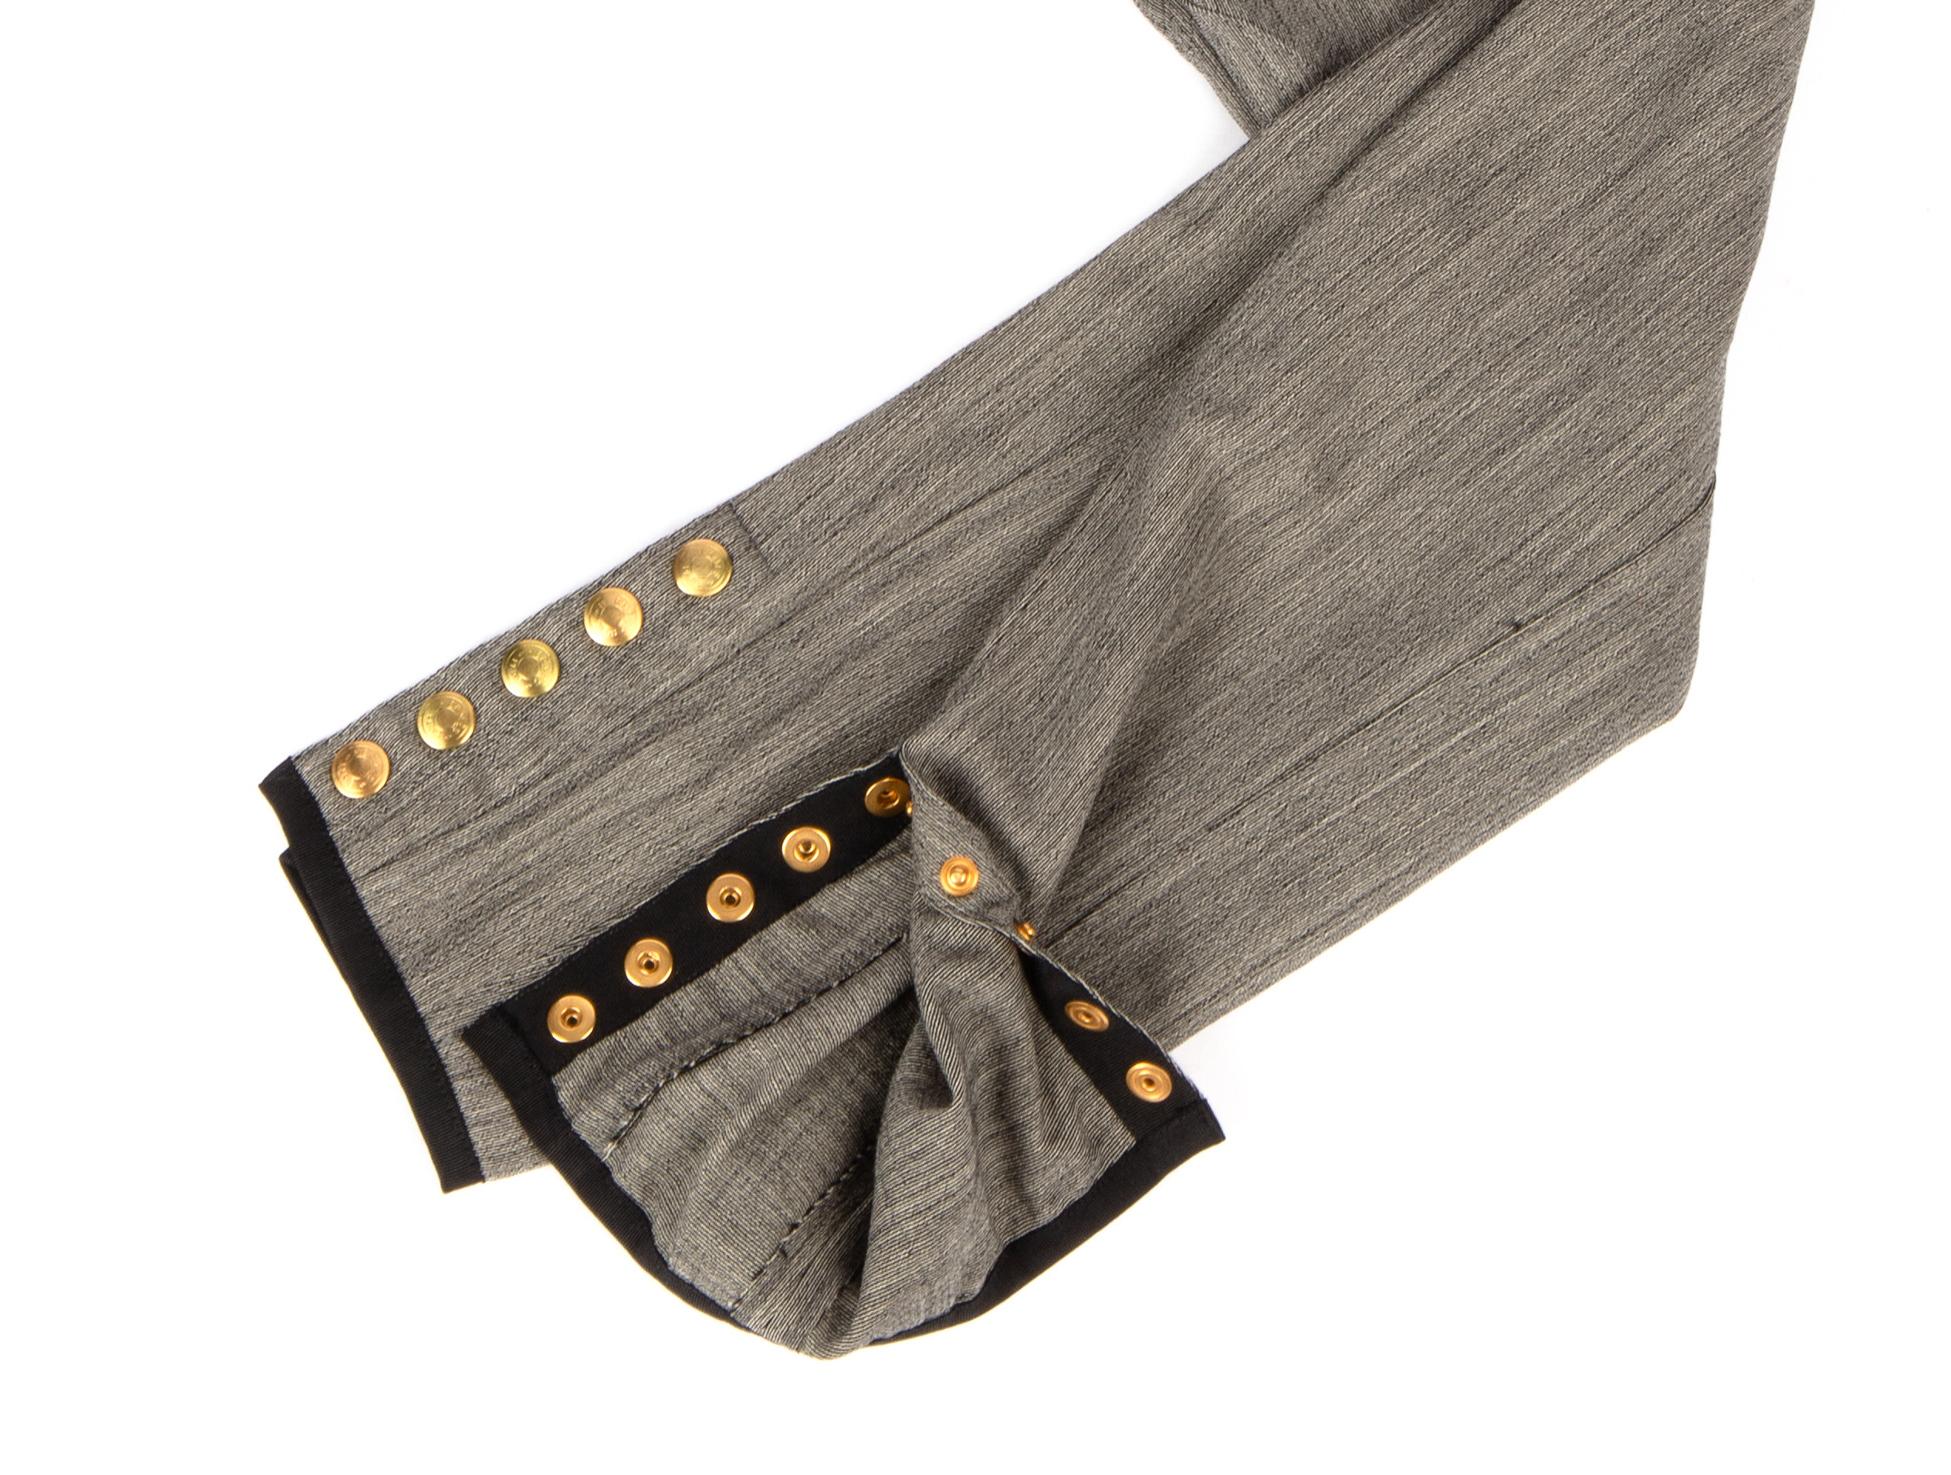 Mightychic bietet eine Hermes Vintage-Reithose aus schwarzem und grauem strukturiertem Stoff mit dem begehrten goldenen Clou de Selle am Knöchel an.
Jodhpur-Nähte im Kniebereich.
2 Vordertaschen mit Reißverschluss und schwarzen